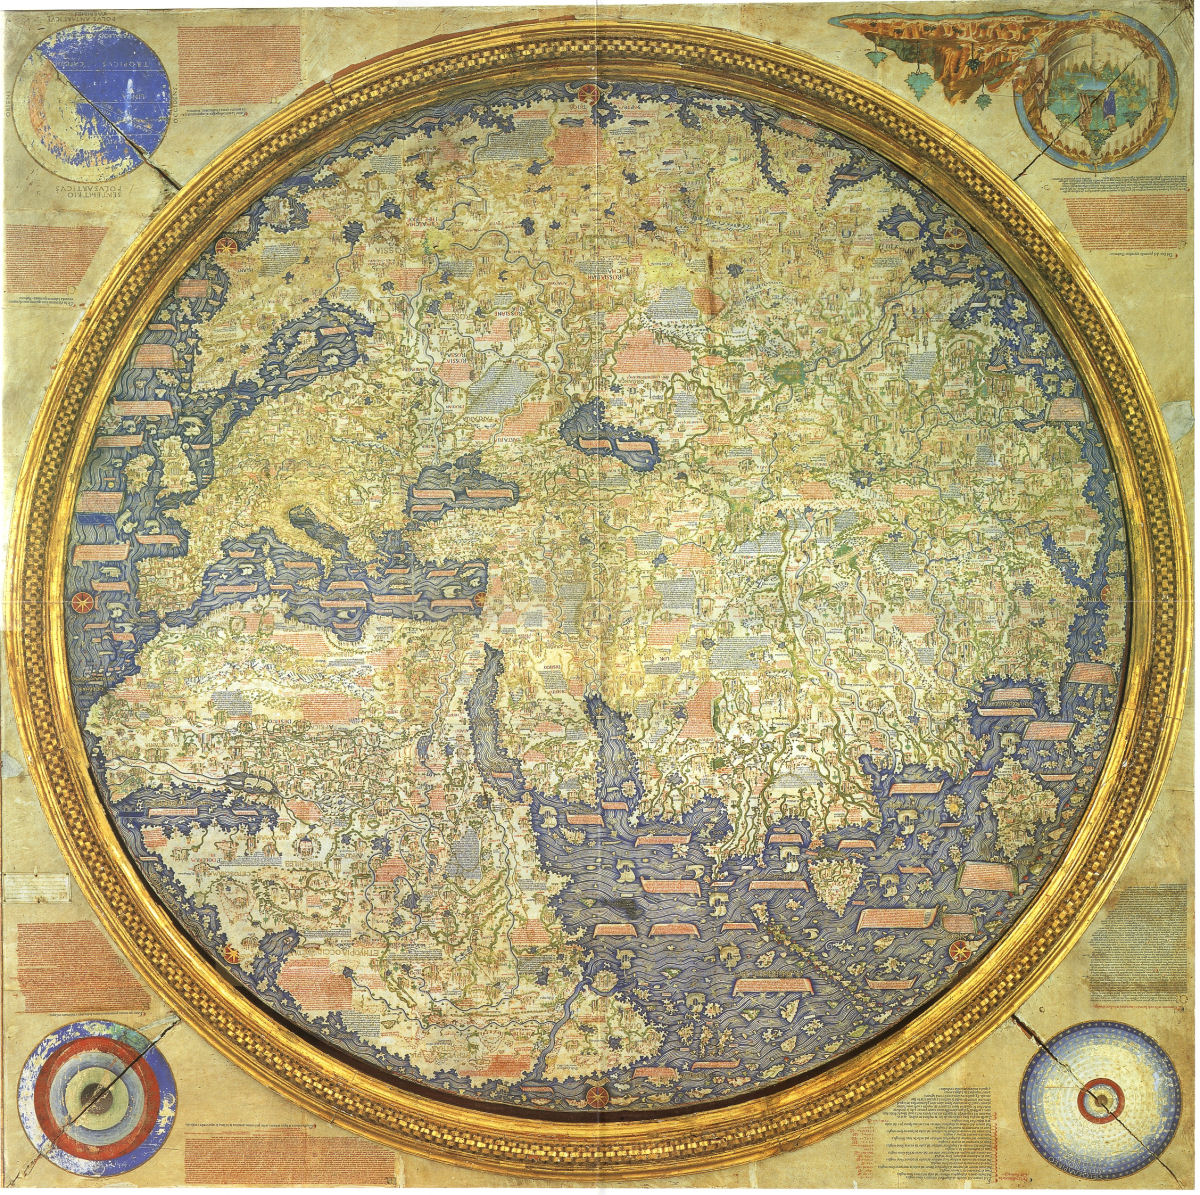 Mappa Mundi: O maior mapa medieval do mundo